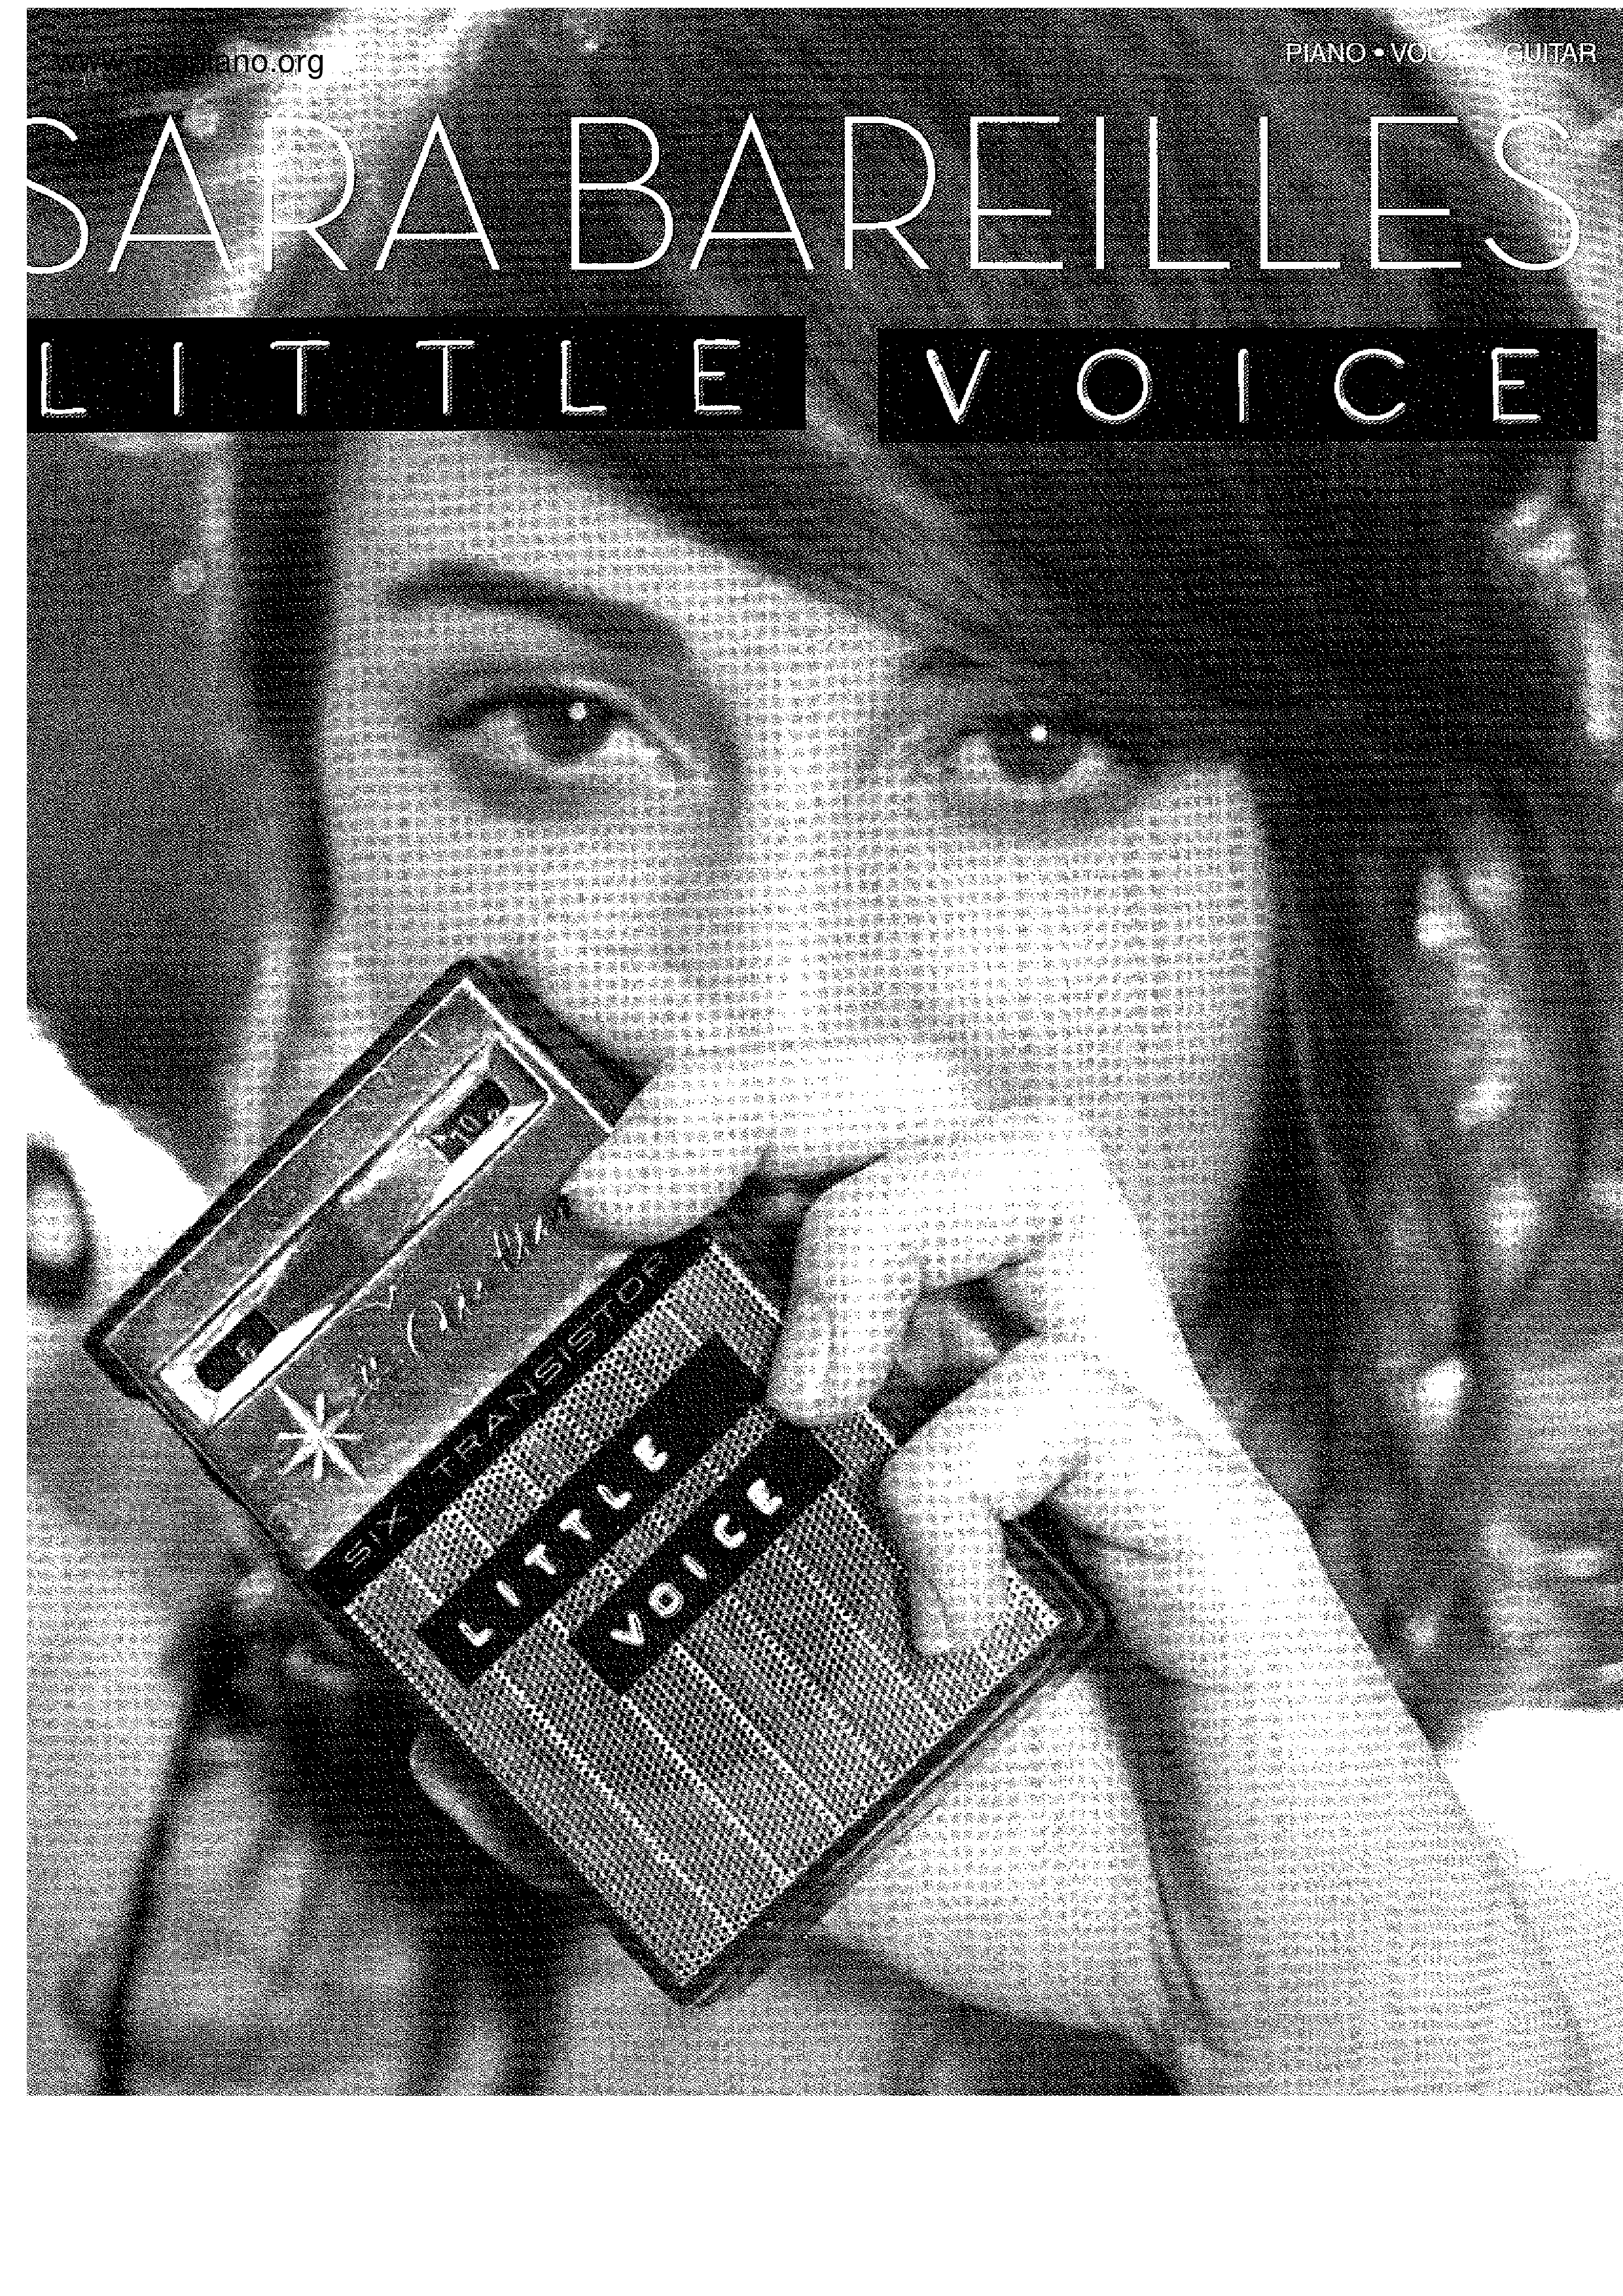 Little Voice 106 Pages Score